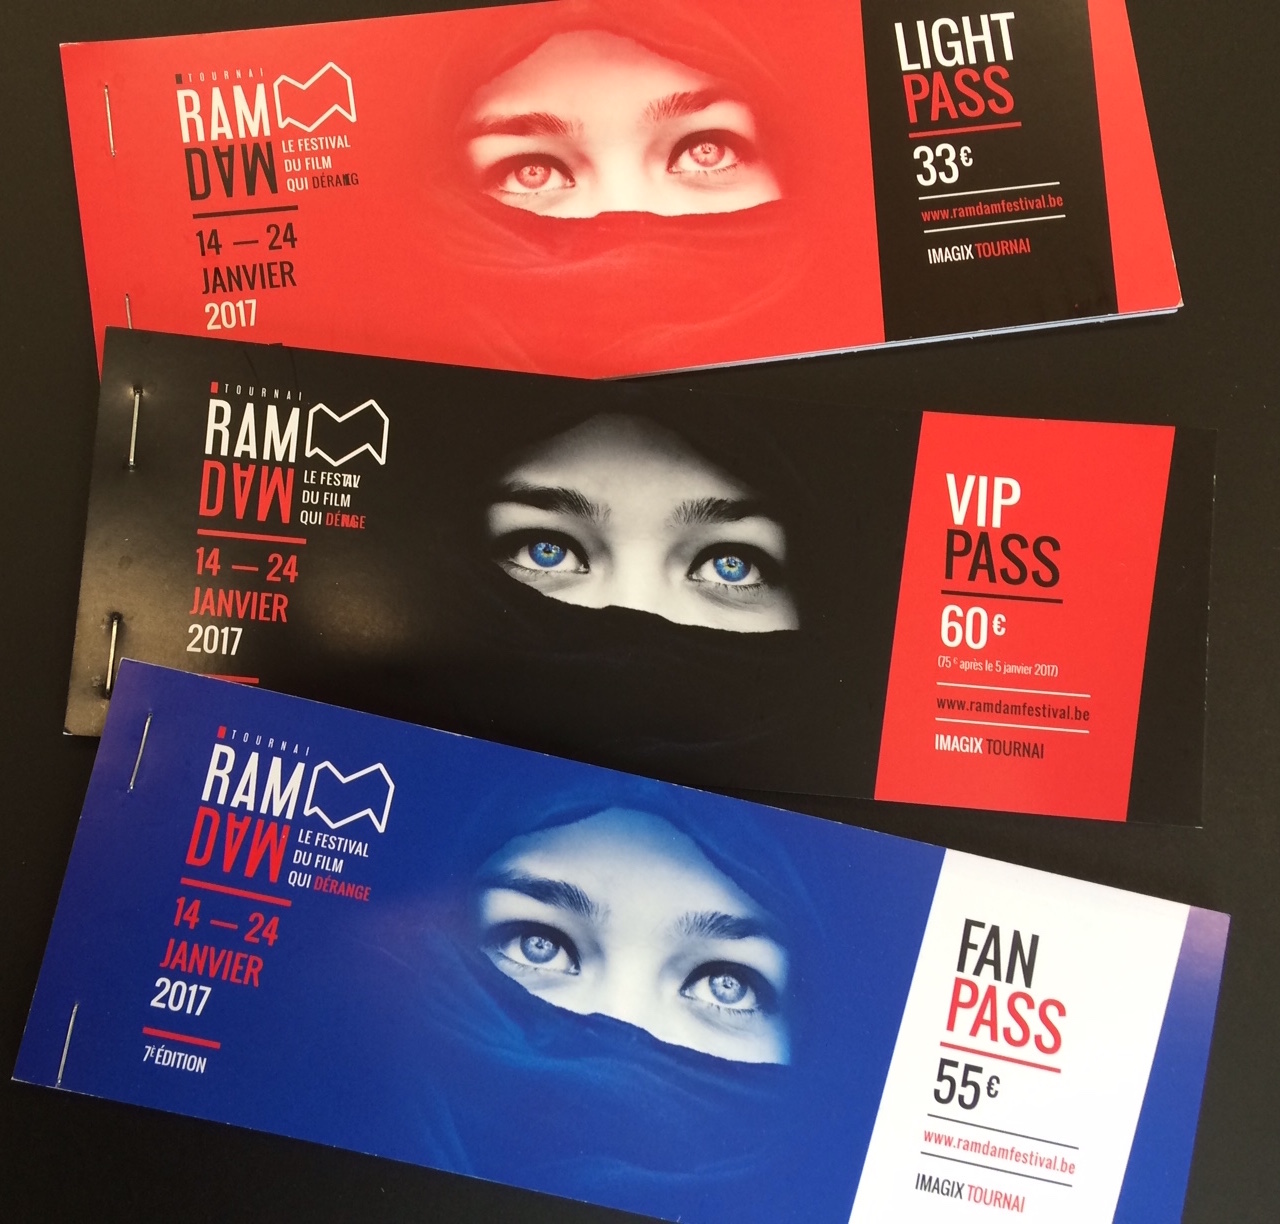 Les PASS pour la 7e édition du Tournai Ramdam Festival sont désormais en vente !